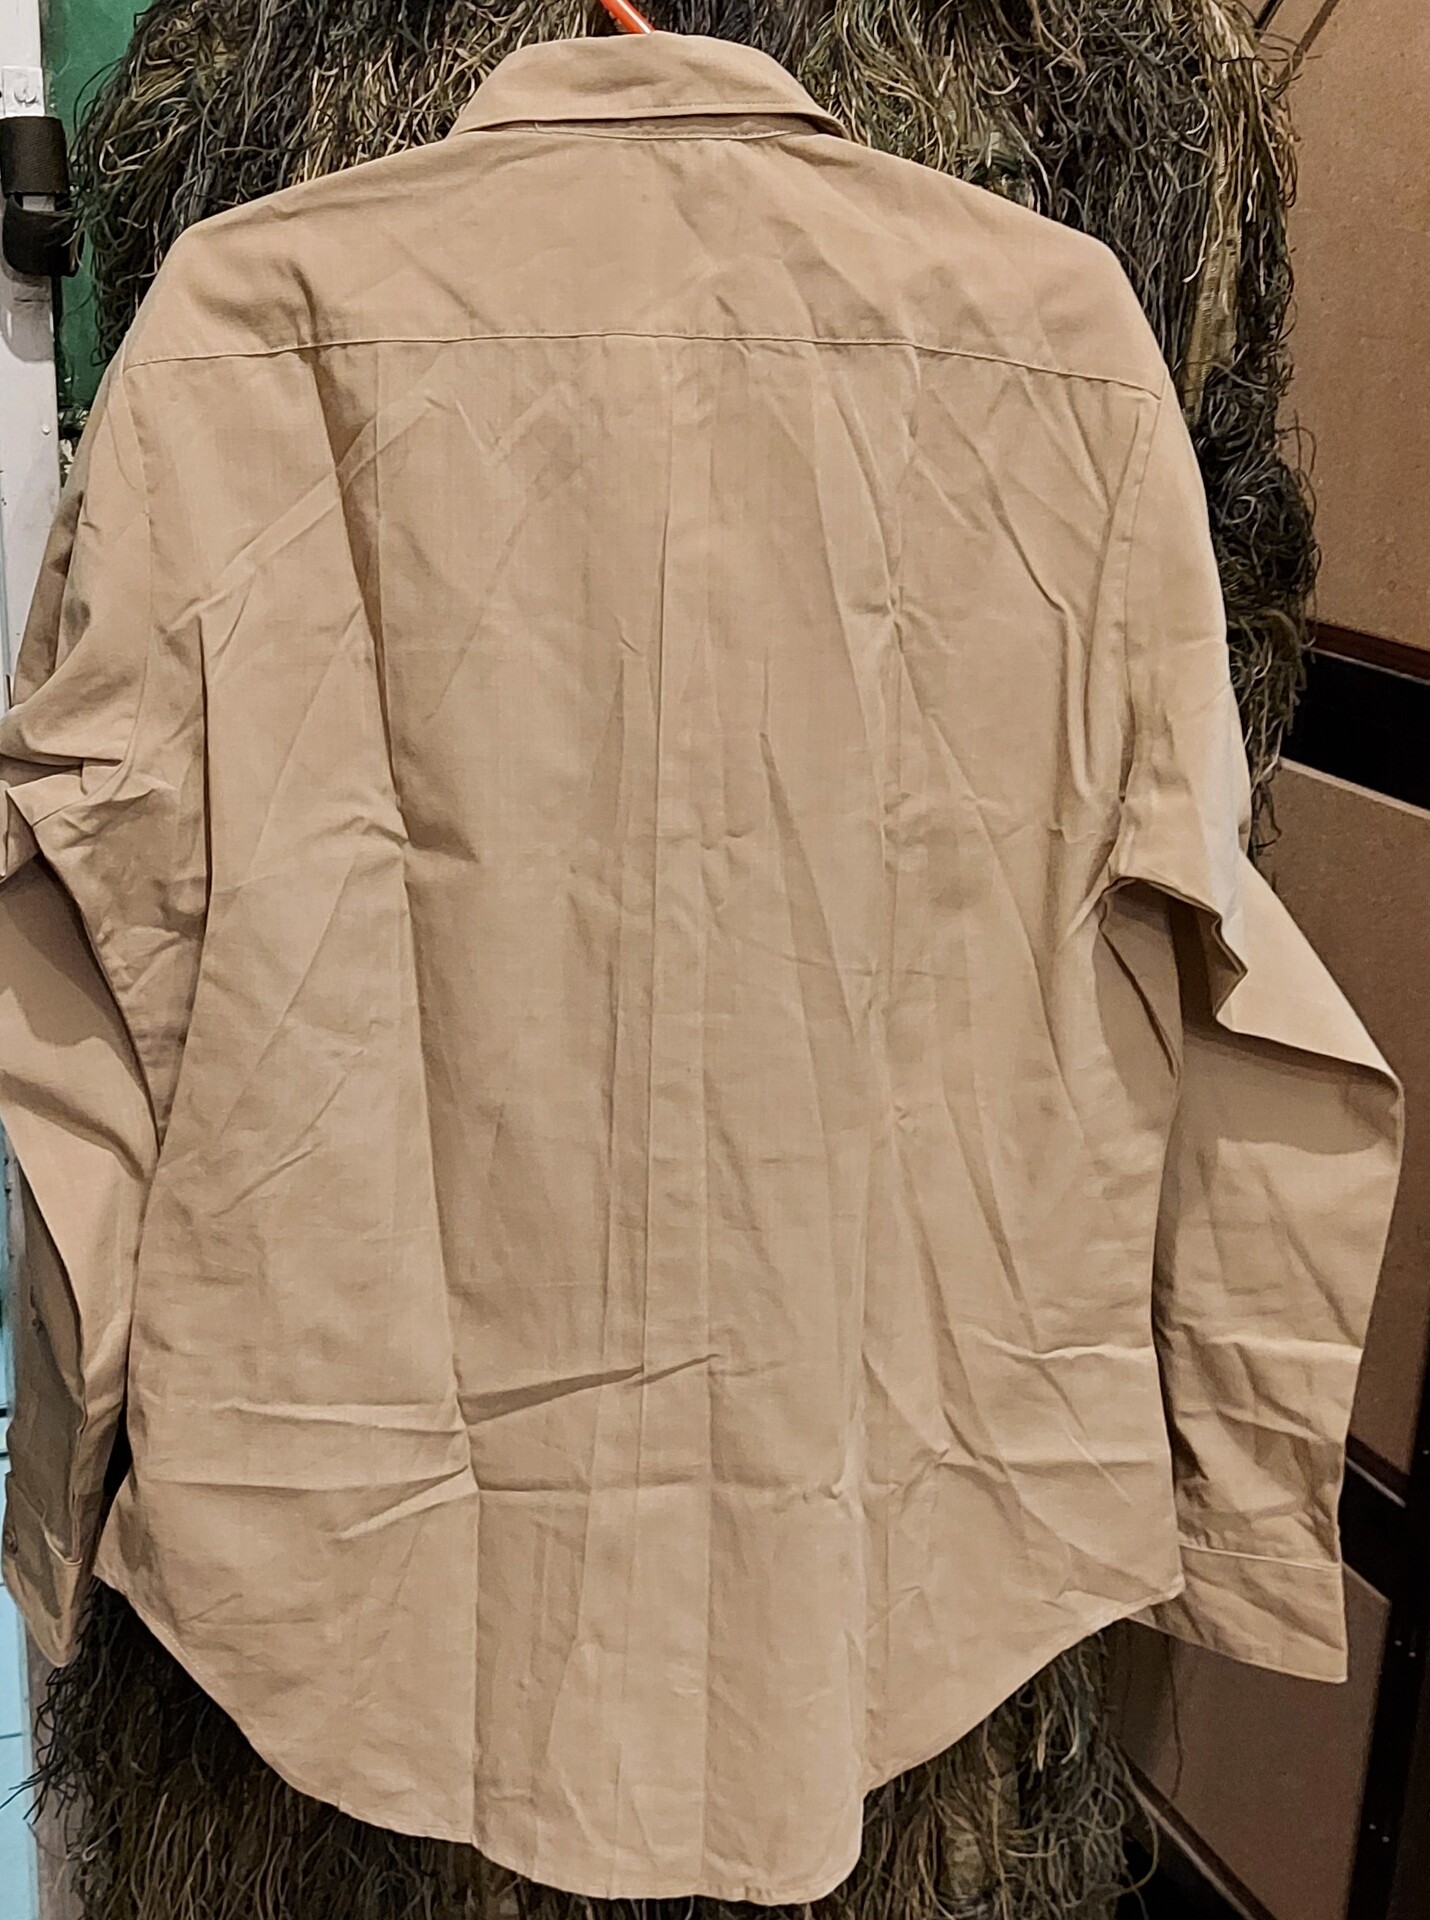 Koszula wojskowa z długim ękawem USMC (LANCE CORPORAL) - Khaki (14x34)